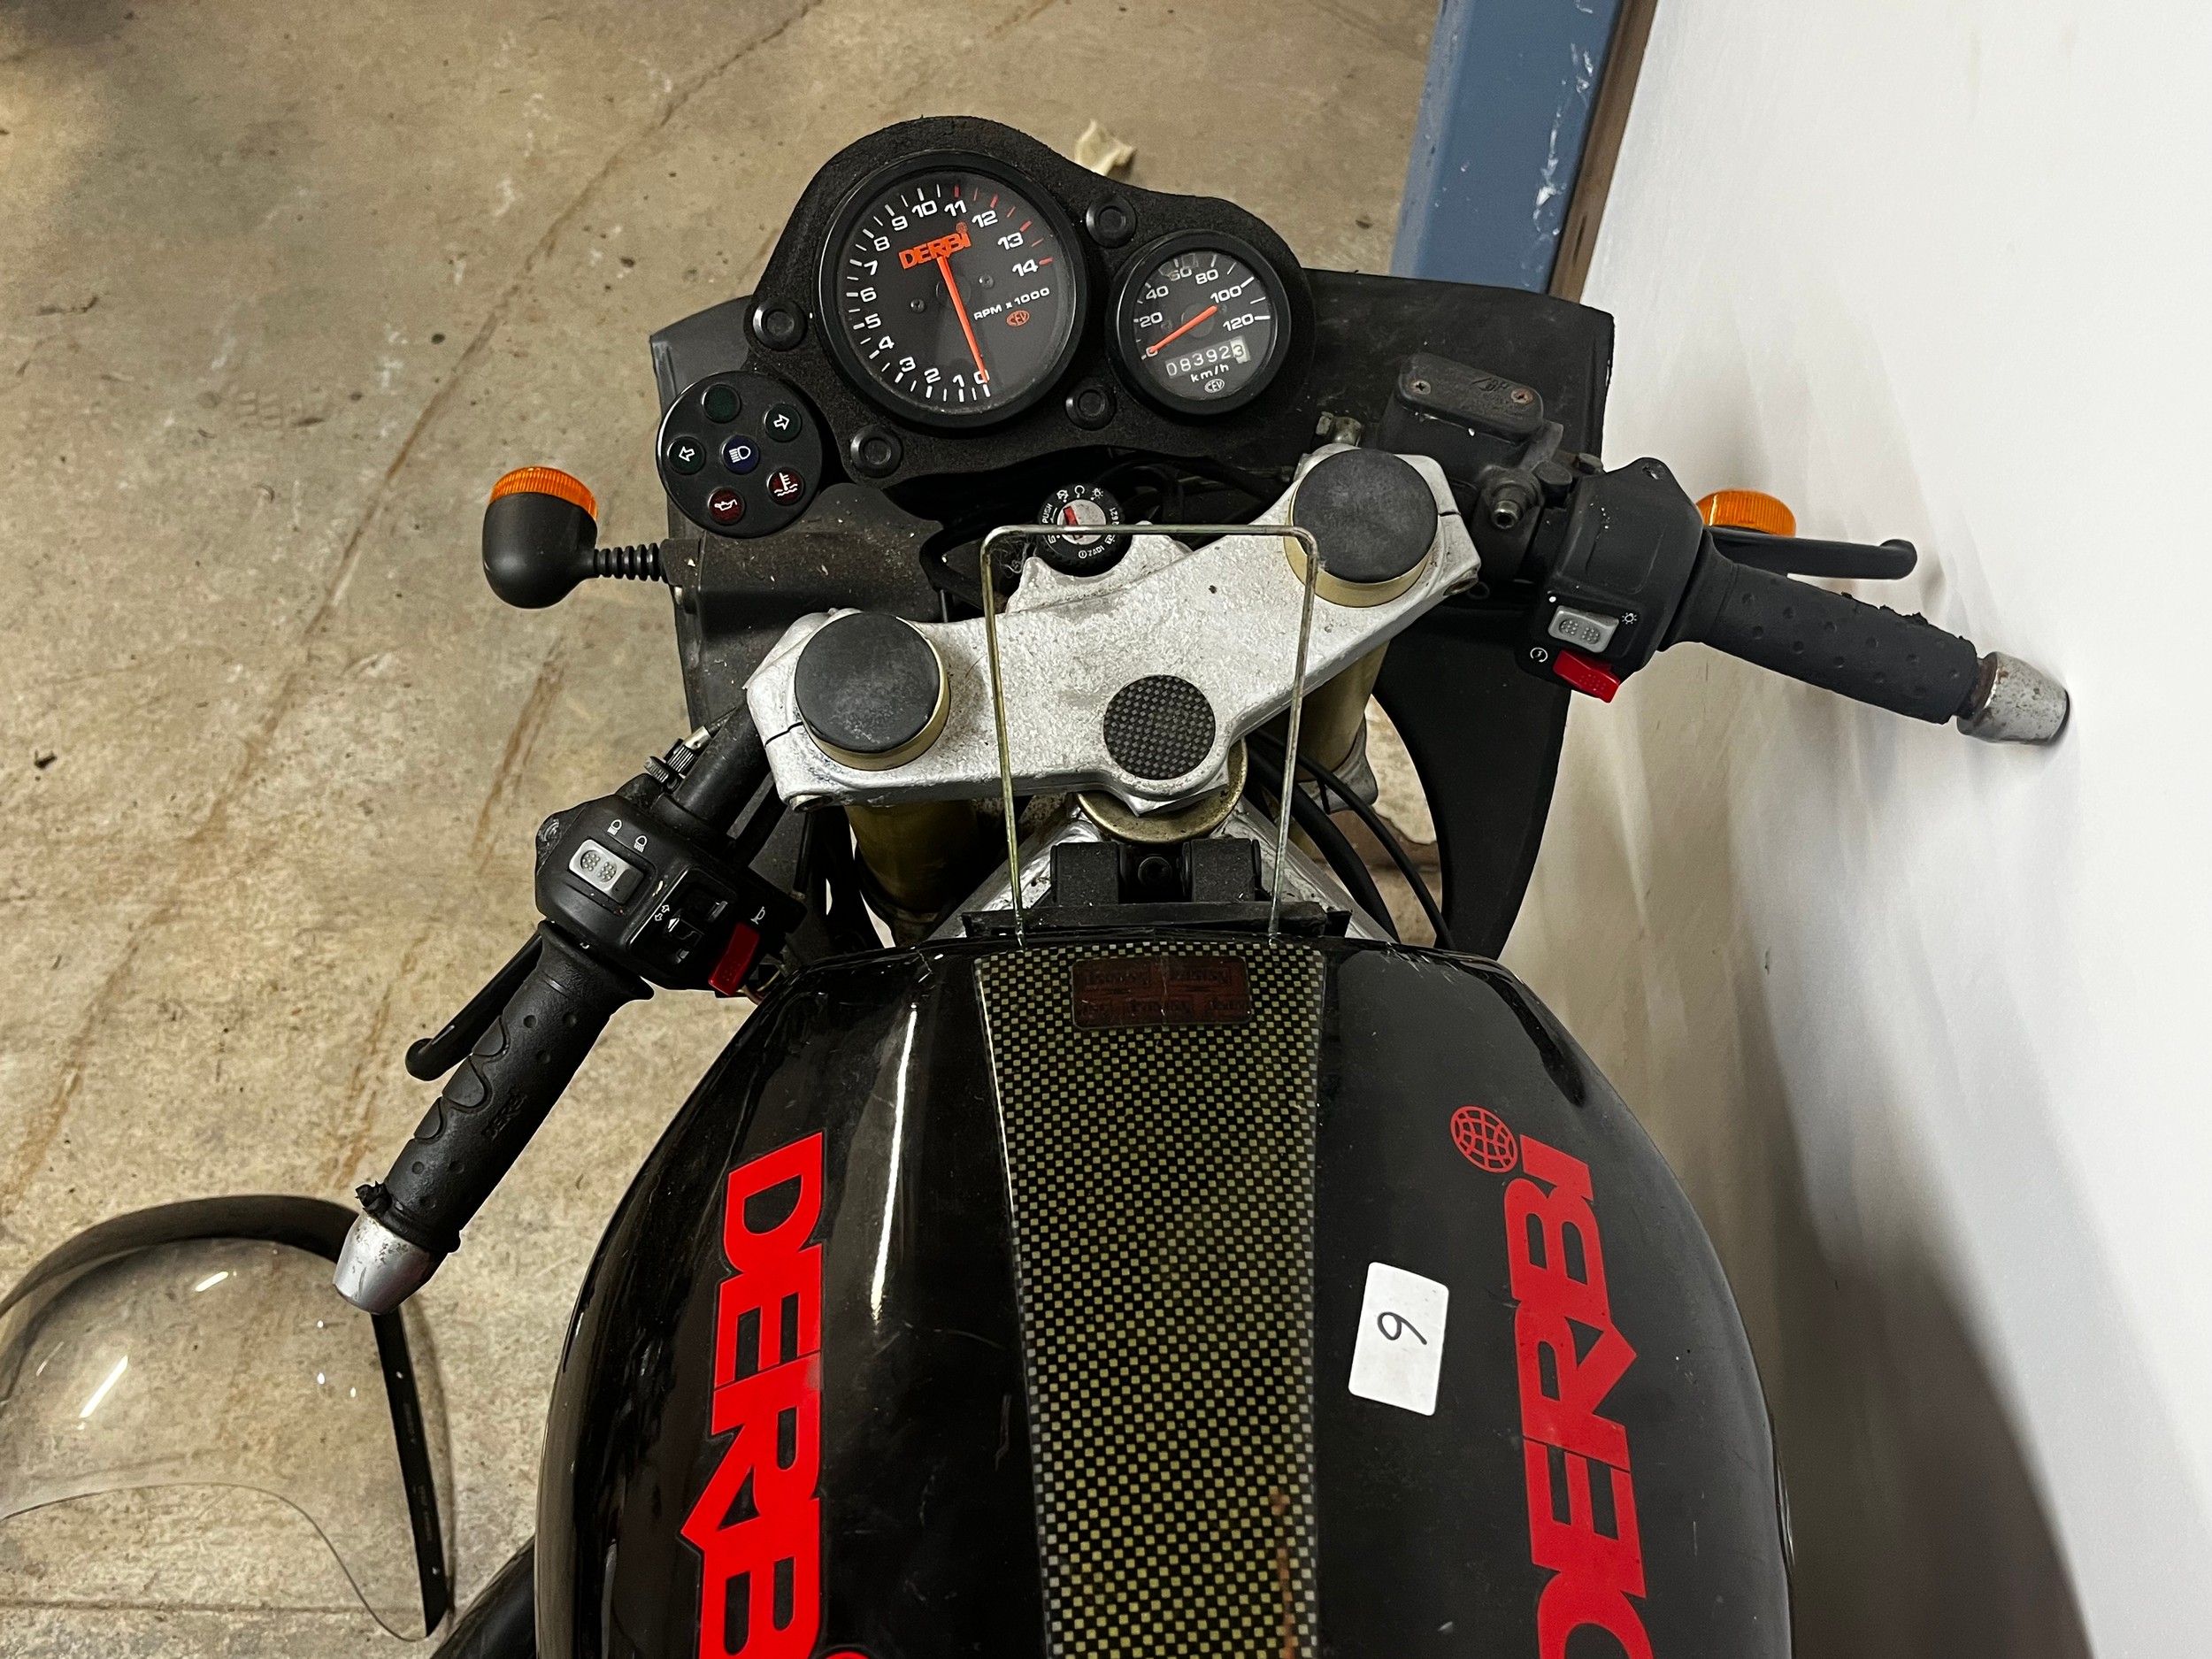 A Derbi 50 motorbike - Image 3 of 5